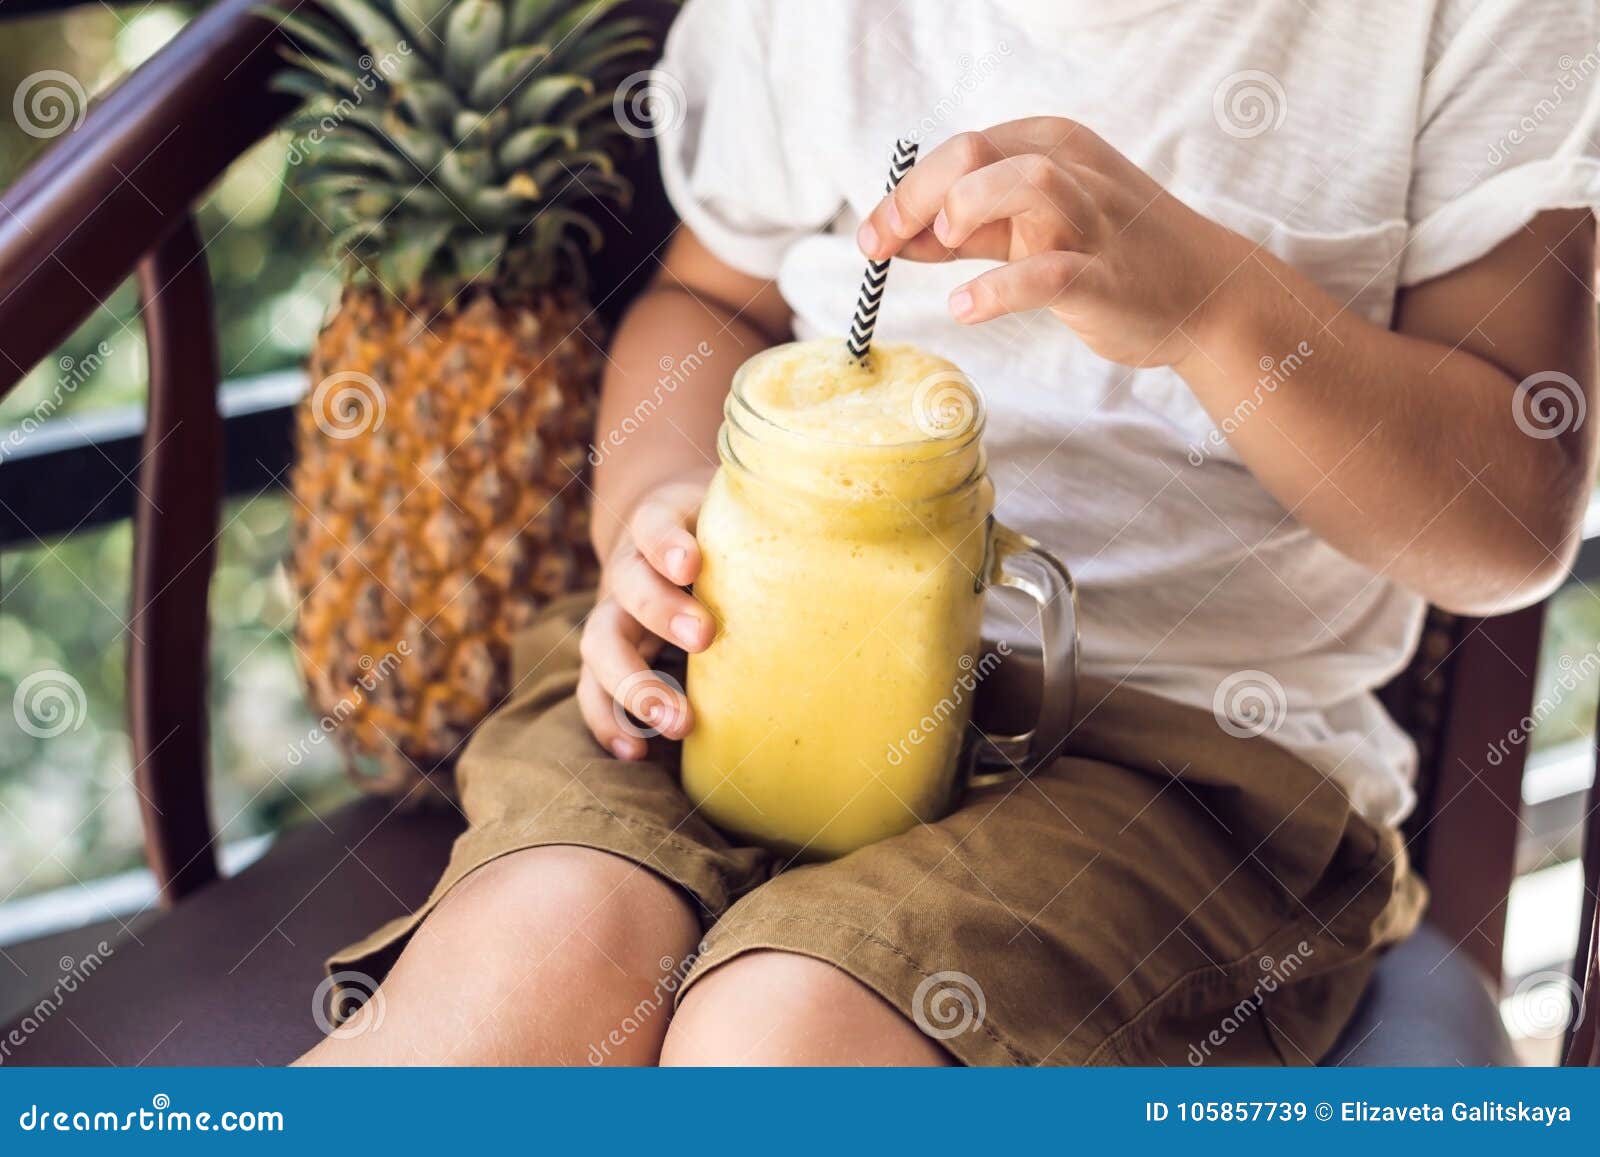 Зачем мужчины пьют ананасовый. Пацаны и ананасовый сок. Ананасовый сок в руке фото. Смузи на веранде с девушками фото. Мужчина пьет ананасовый сок.